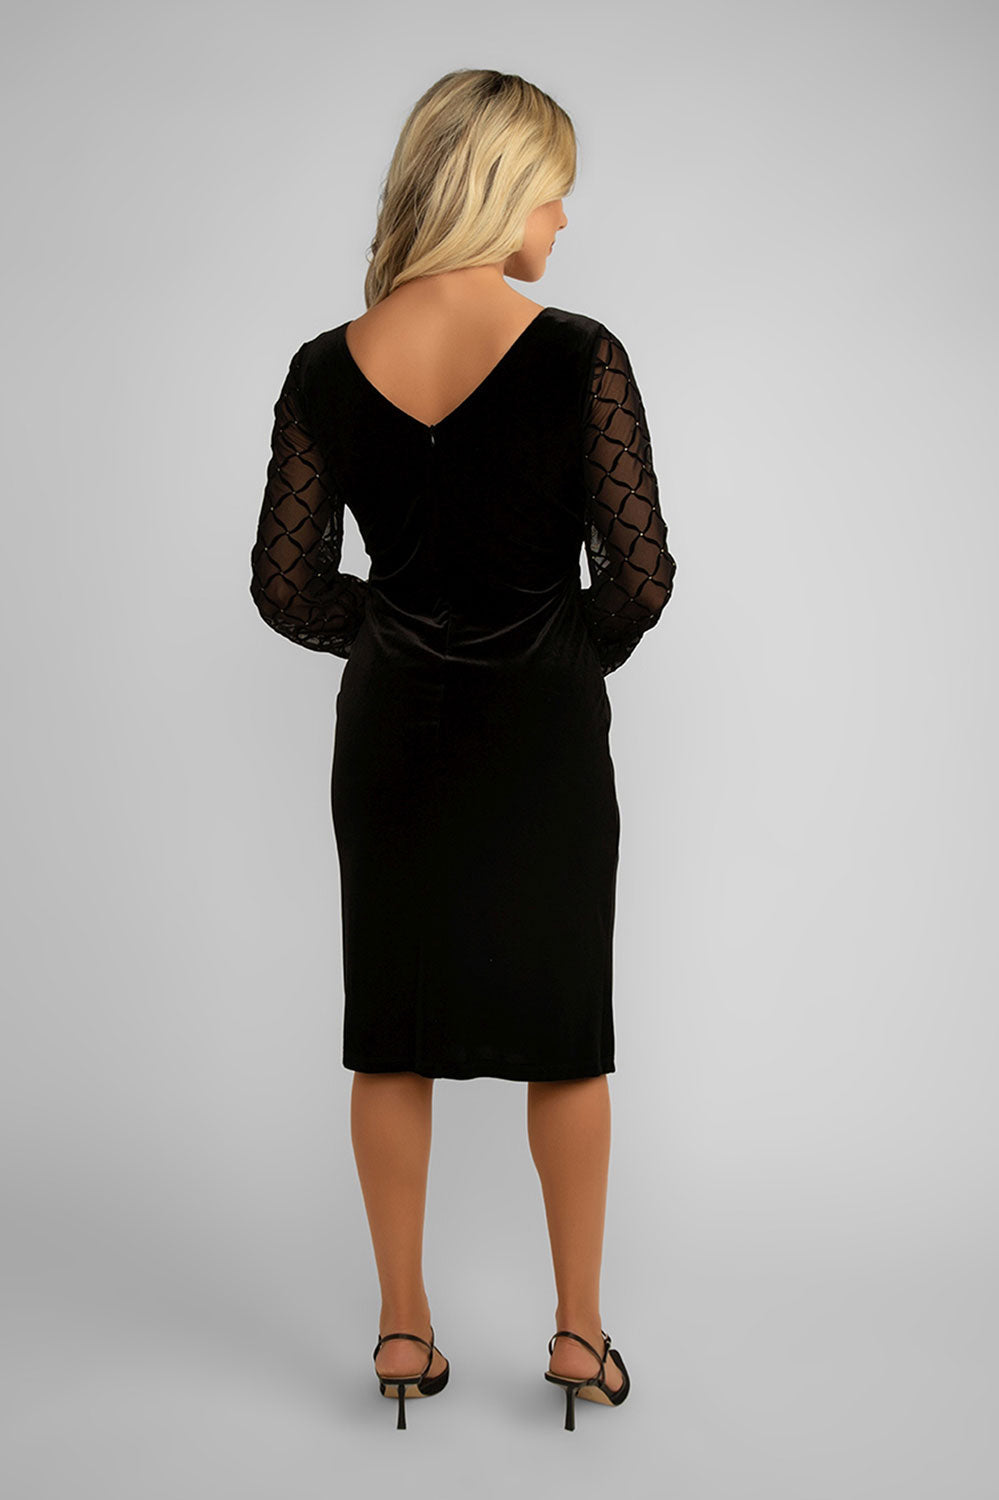 Women's Clothing FRANK LYMAN (239235) Velvet Dress With Beaded Sleeves in BLACK/GOLD